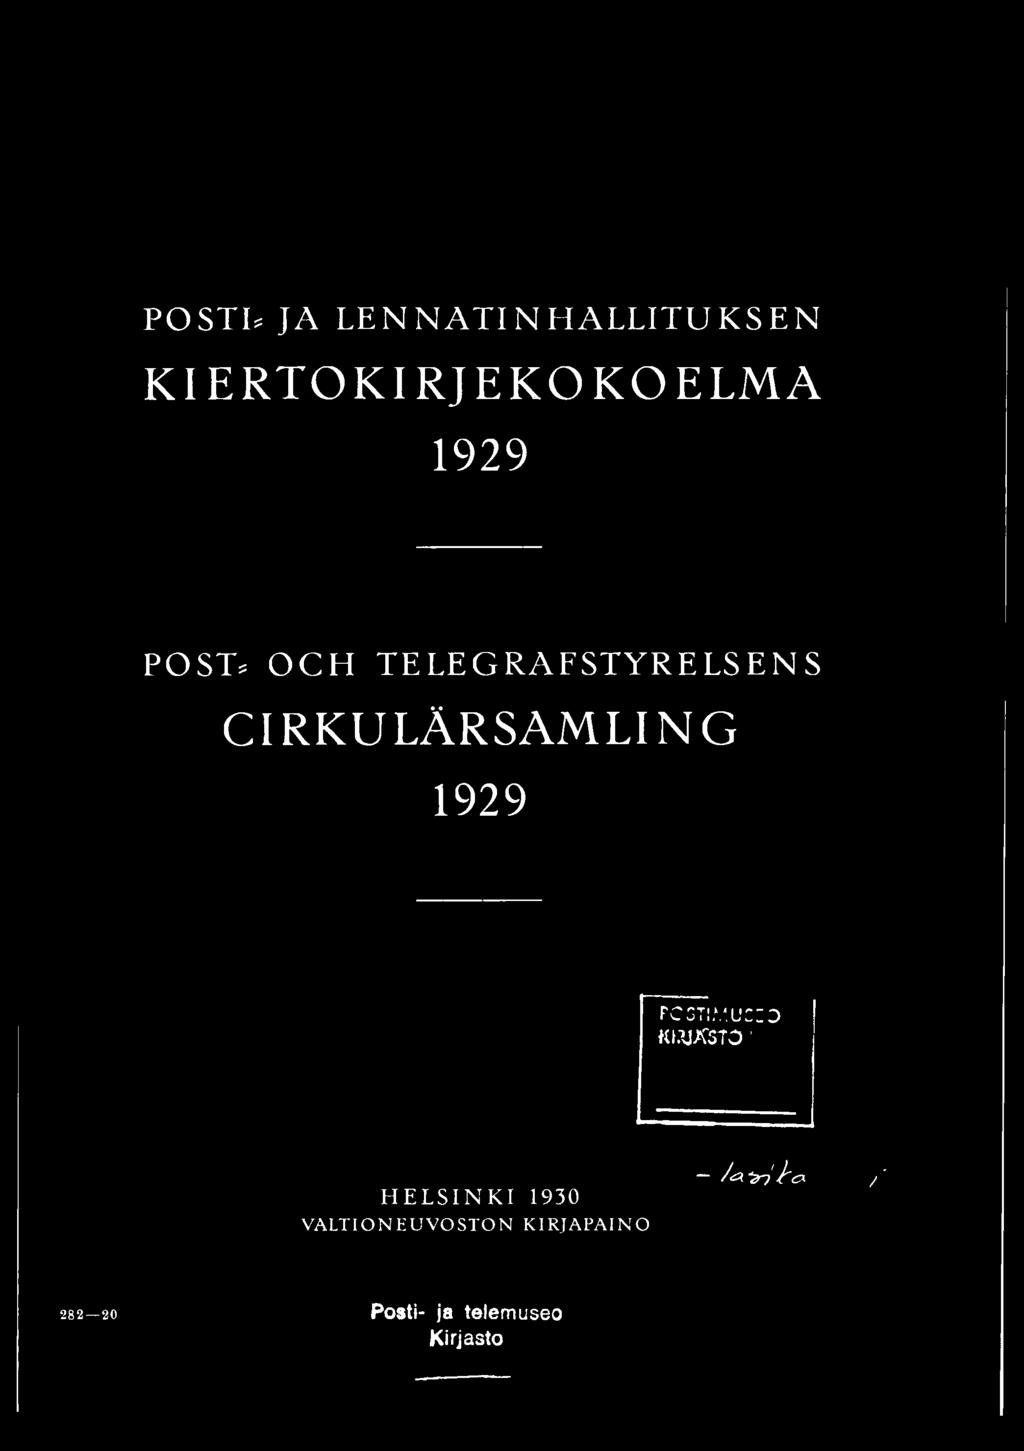 U2IO KUJÄ5TCT HELSINKI 1930 VALTIONEUVOSTON KIRJAPAINO /